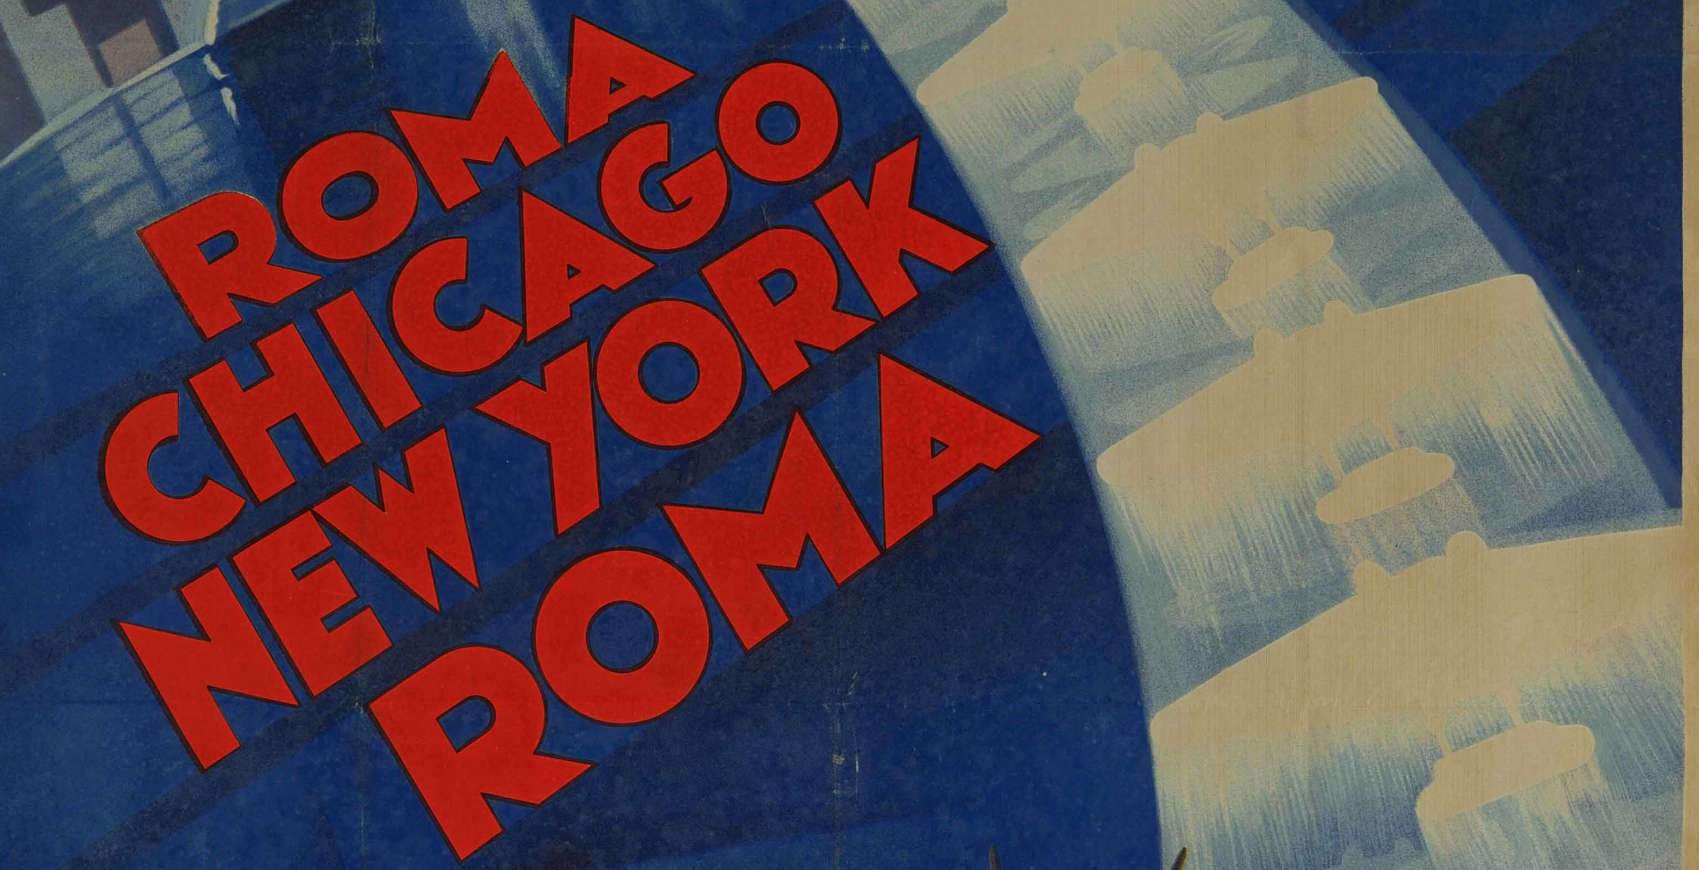 Futurisme de papier : exposition d'affiches publicitaires des années 1930 à Trévise